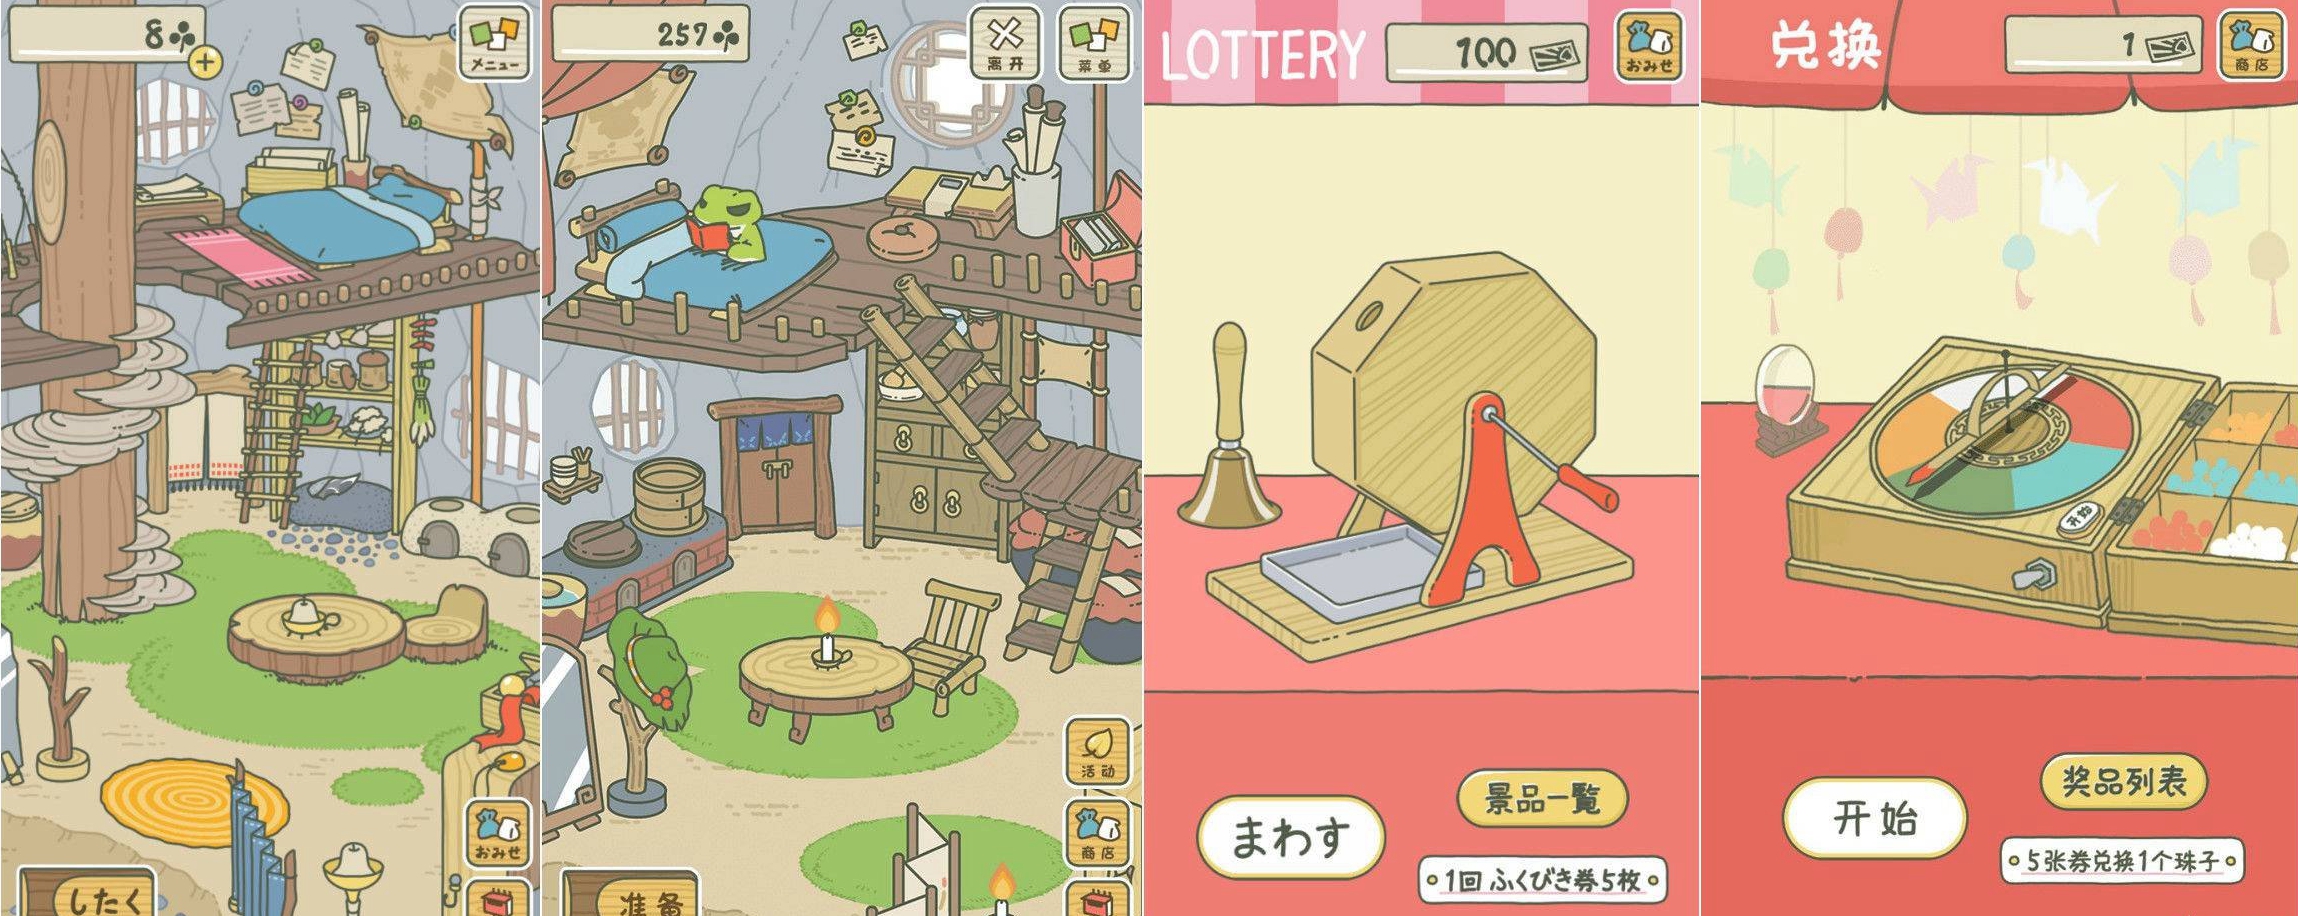 Алибаба выпустили игру «Лягушка-путешественница» в версии Таобао на китайском языке